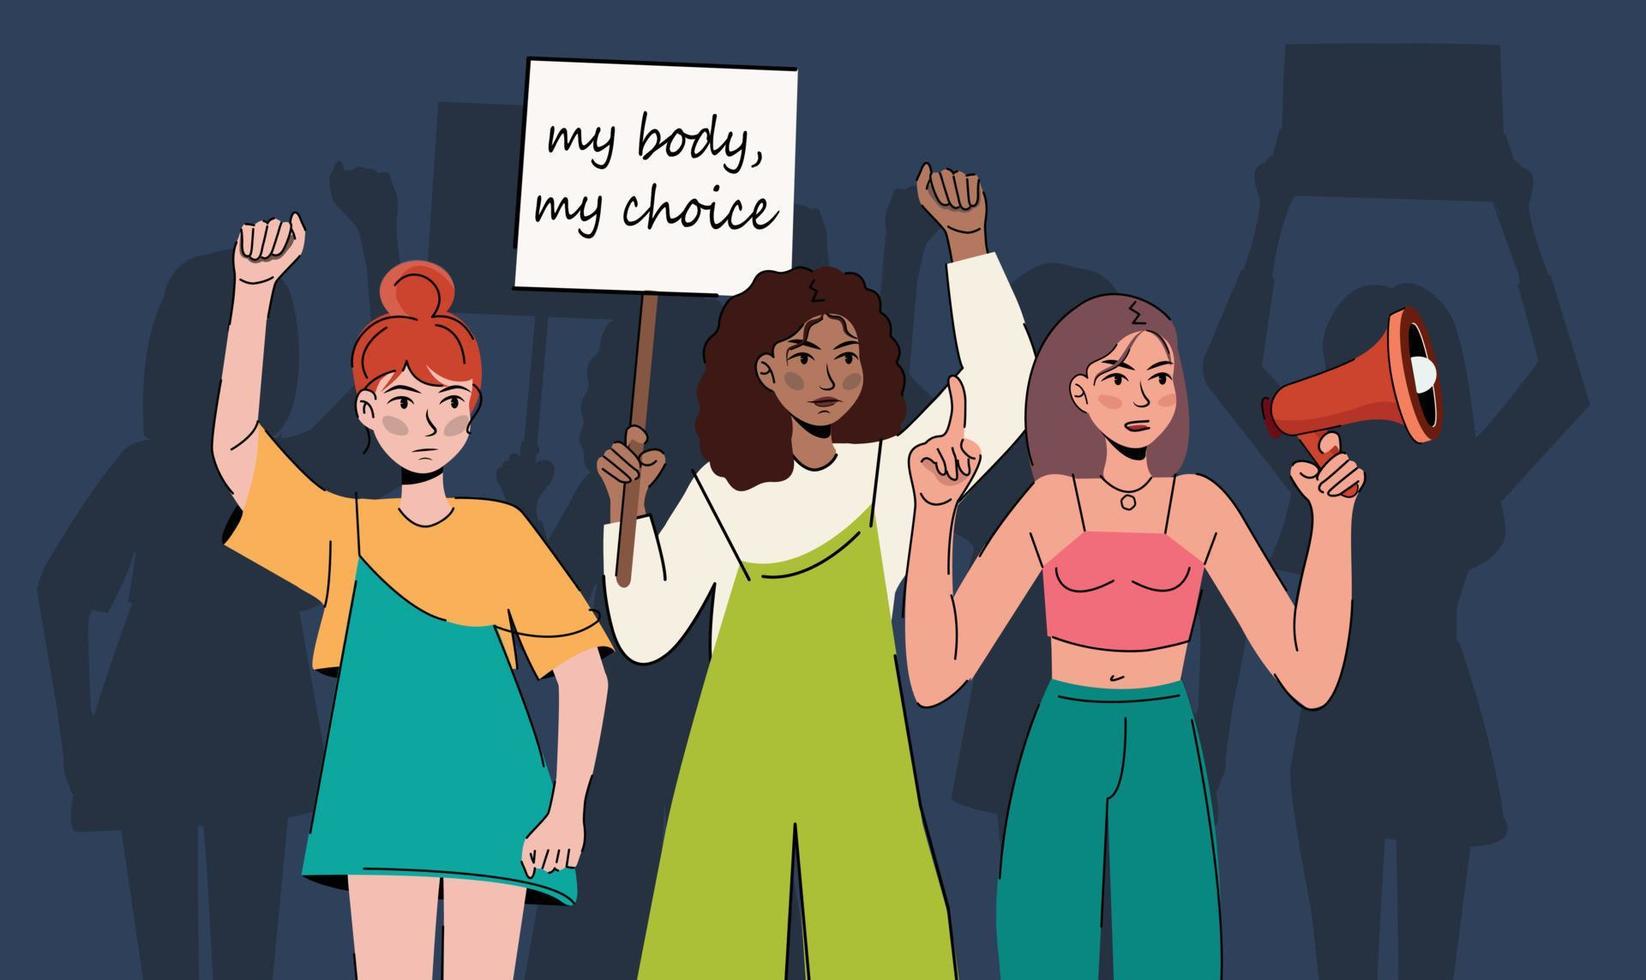 kvinnor protesterar pro-val aktivister som håller skyltar min kropp mitt val, behålla abort laglig, abort är hälsovård människor med plakat som stöder aborträtt vid protest demonstration vektor lägenhet